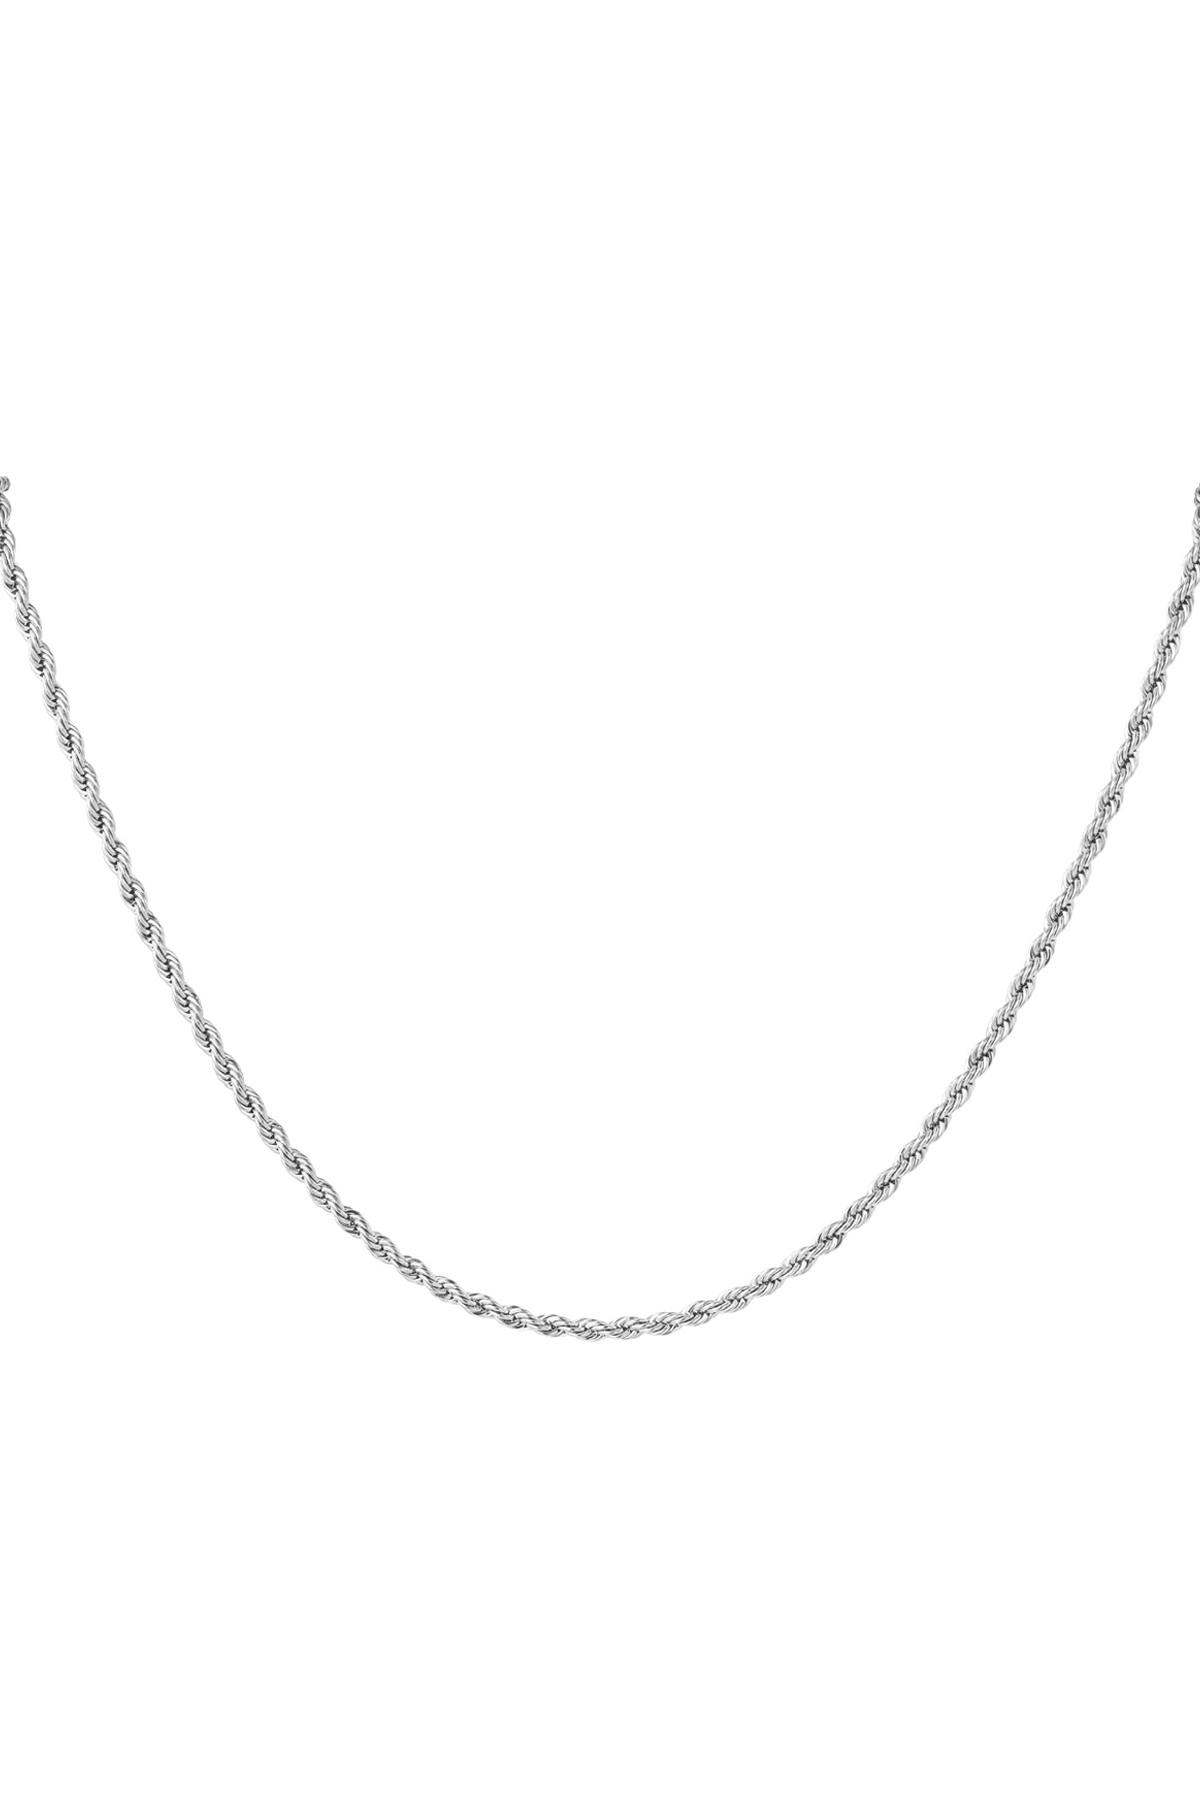 Unisex Halskette fein gedreht - Silber - 3,0 MM 